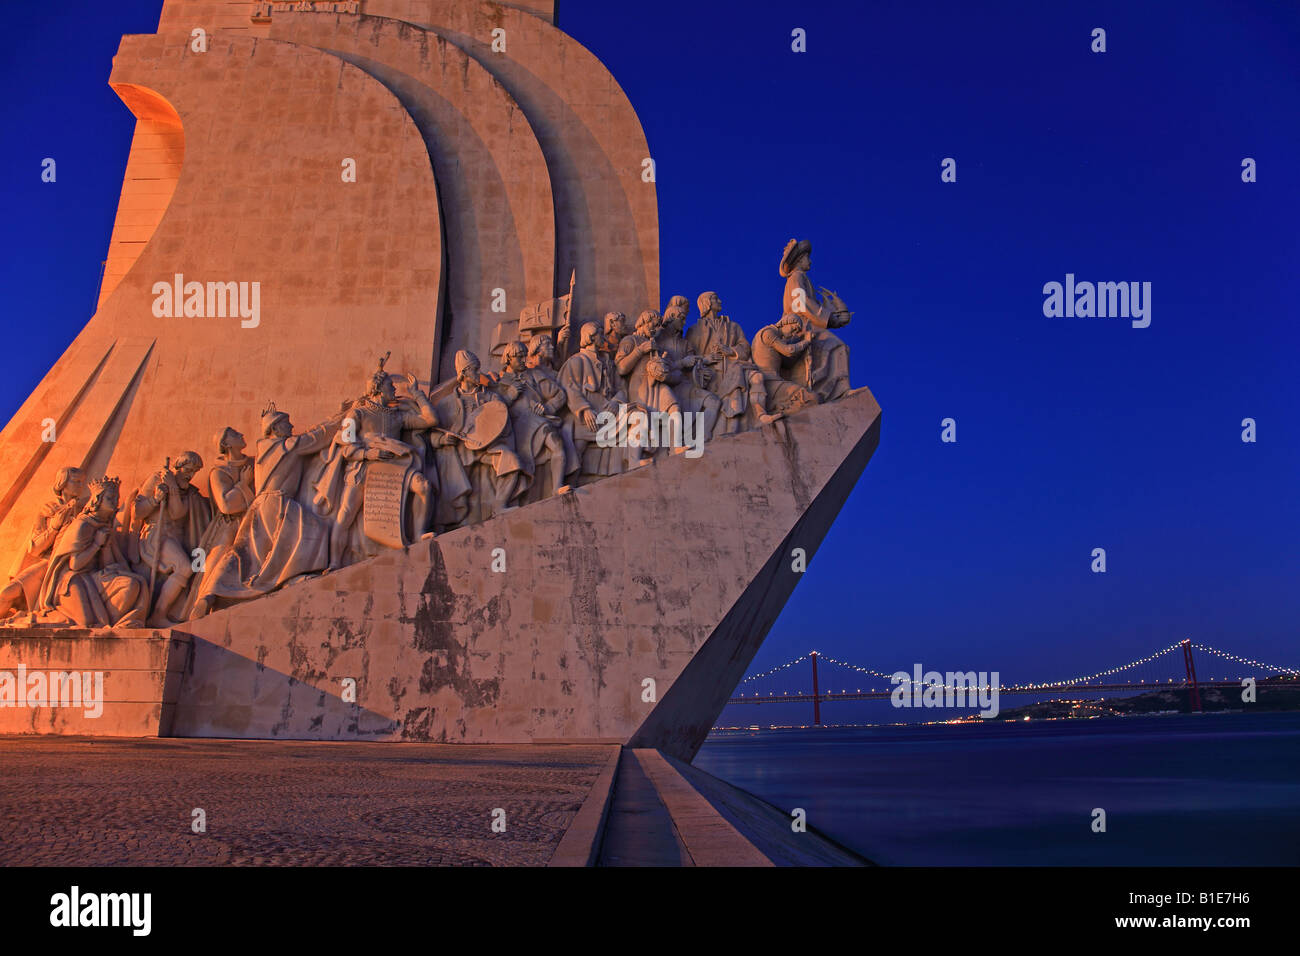 Padrao dos Descobrimentos durante la noche, memorial marinera, Lisboa, Portugal Foto de stock